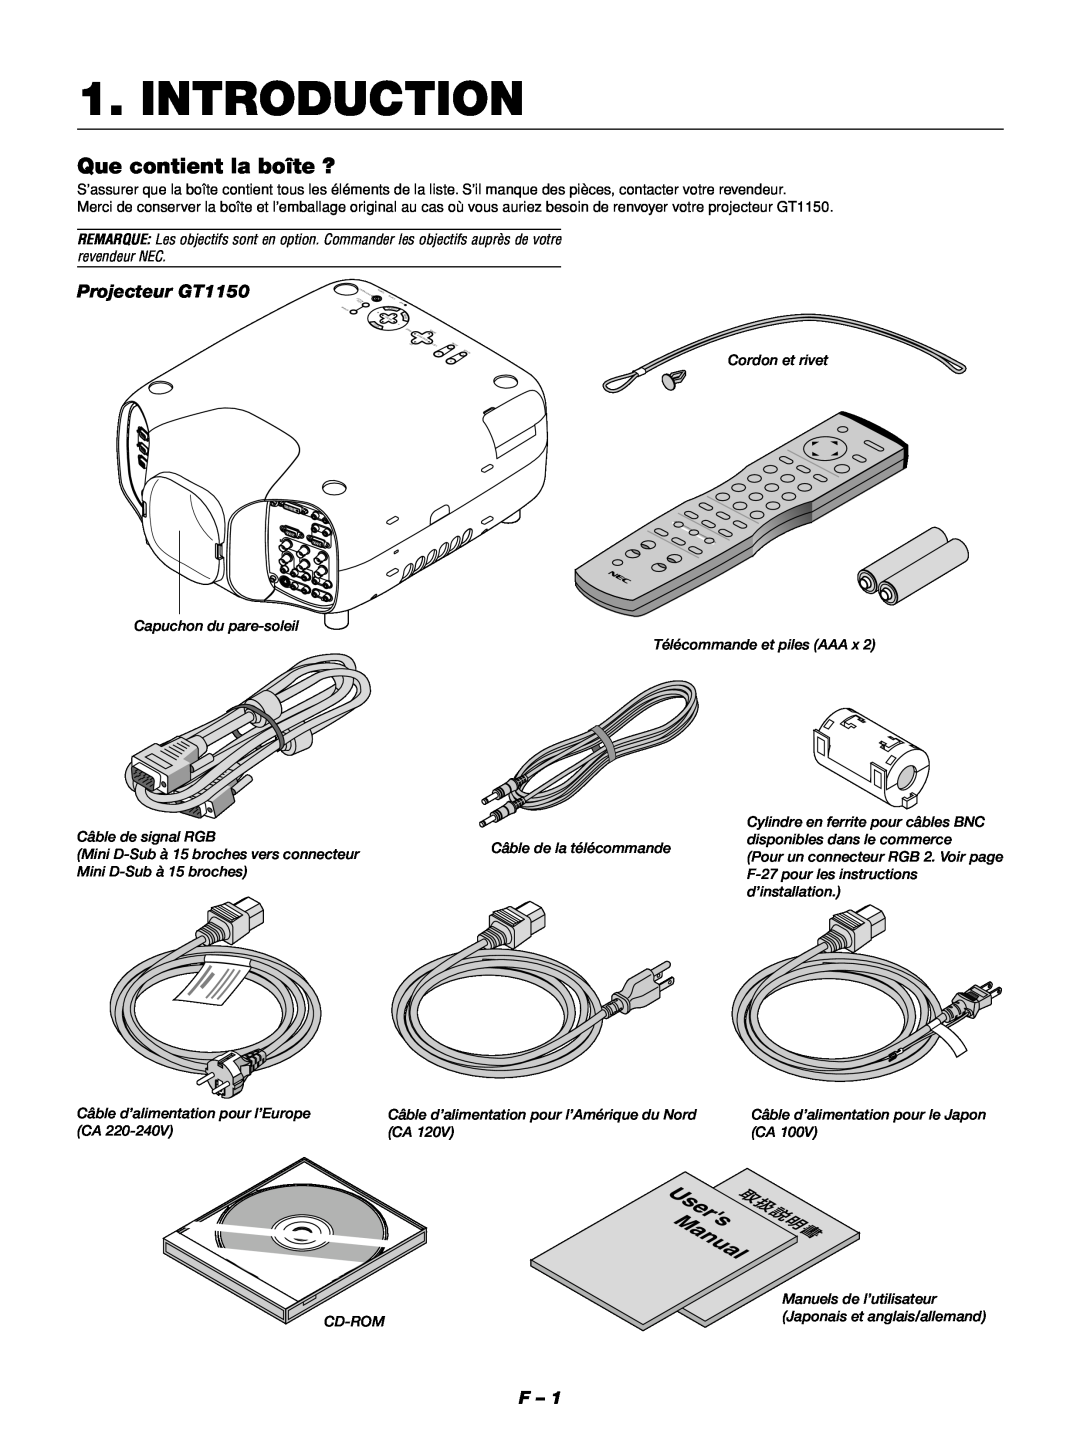 NEC Introduction, Que contient la boîte ?, Projecteur GT1150, Cordon et rivet, Câble de signal RGB, d’installation 